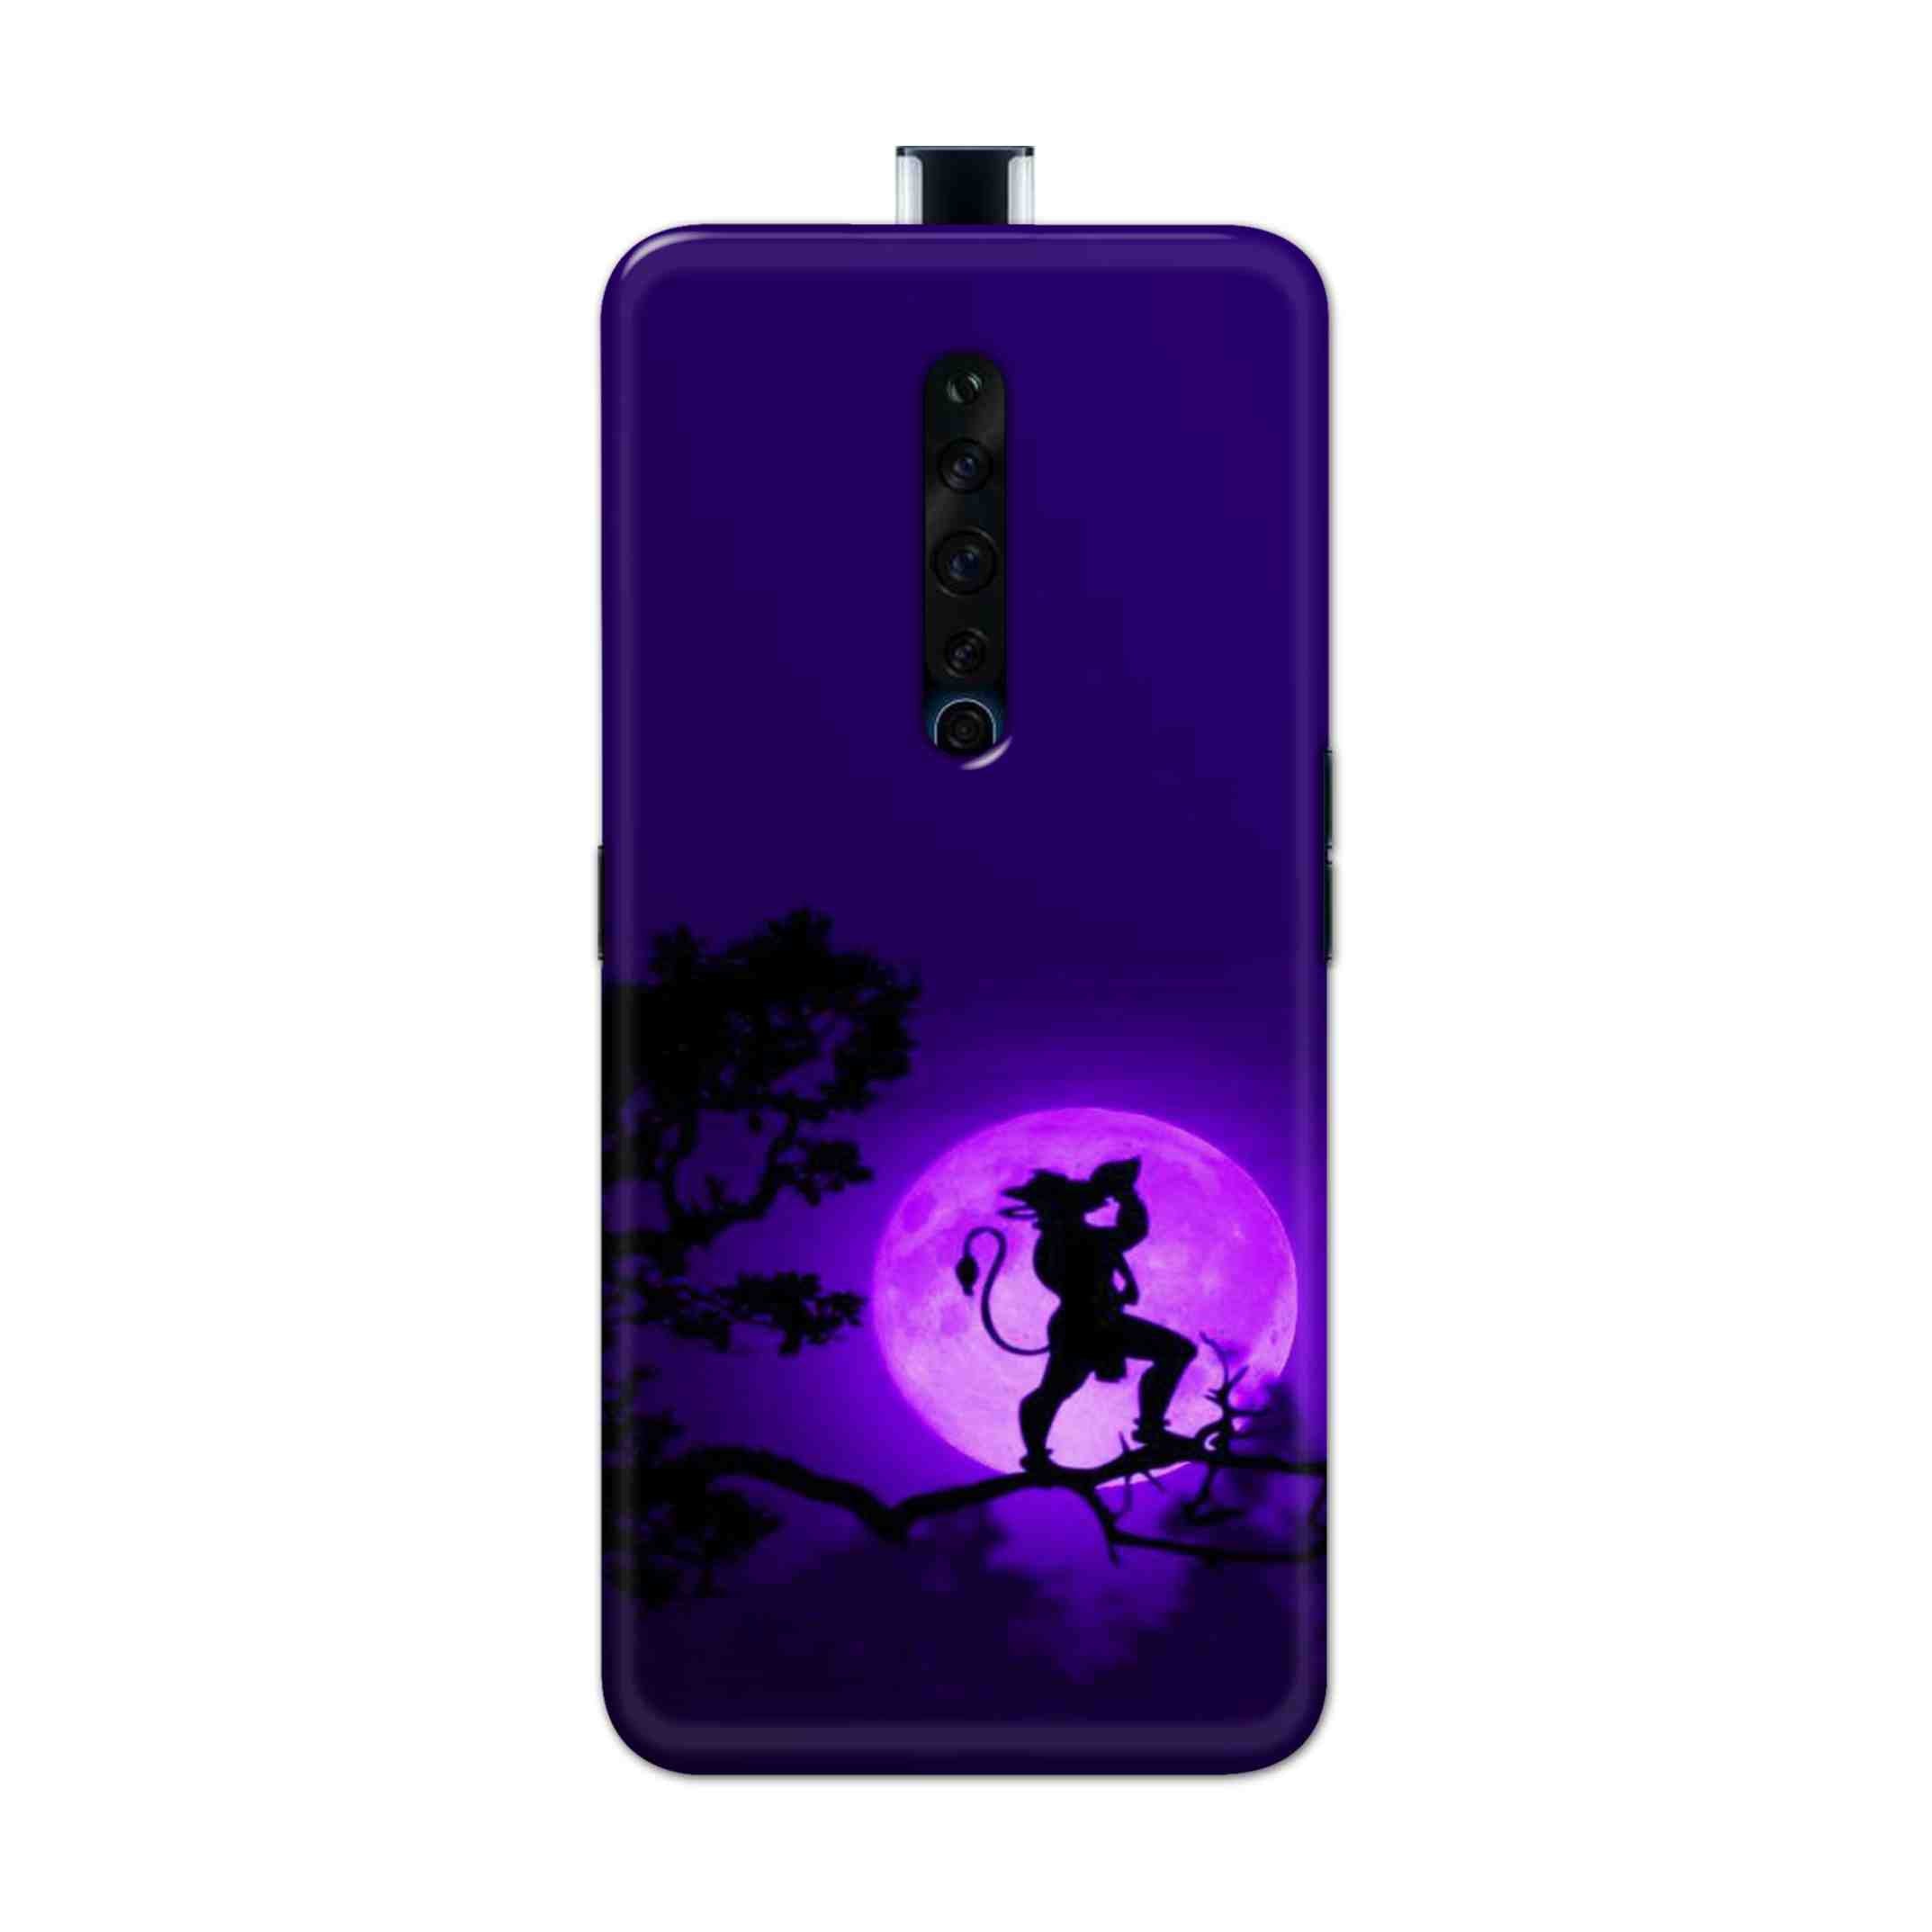 Buy Hanuman Hard Back Mobile Phone Case Cover For Oppo Reno 2Z Online